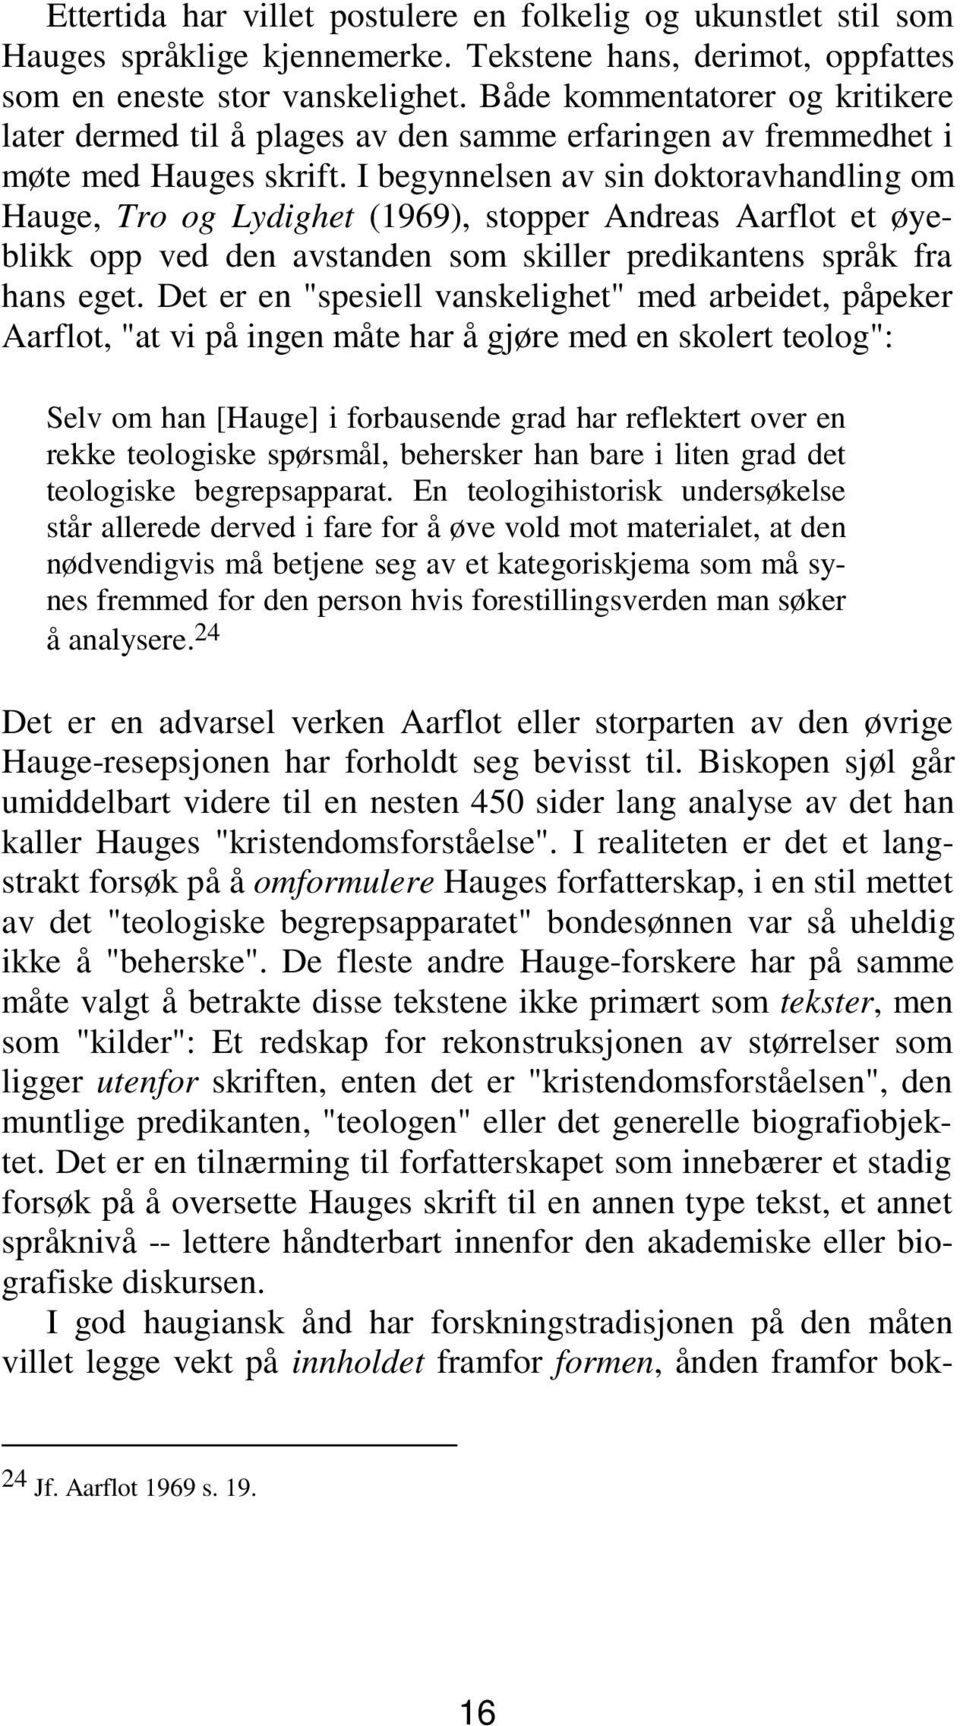 I begynnelsen av sin doktoravhandling om Hauge, TroogLydighet(1969), stopper Andreas Aarflot et øyeblikk opp ved den avstanden som skiller predikantens språk fra hans eget.